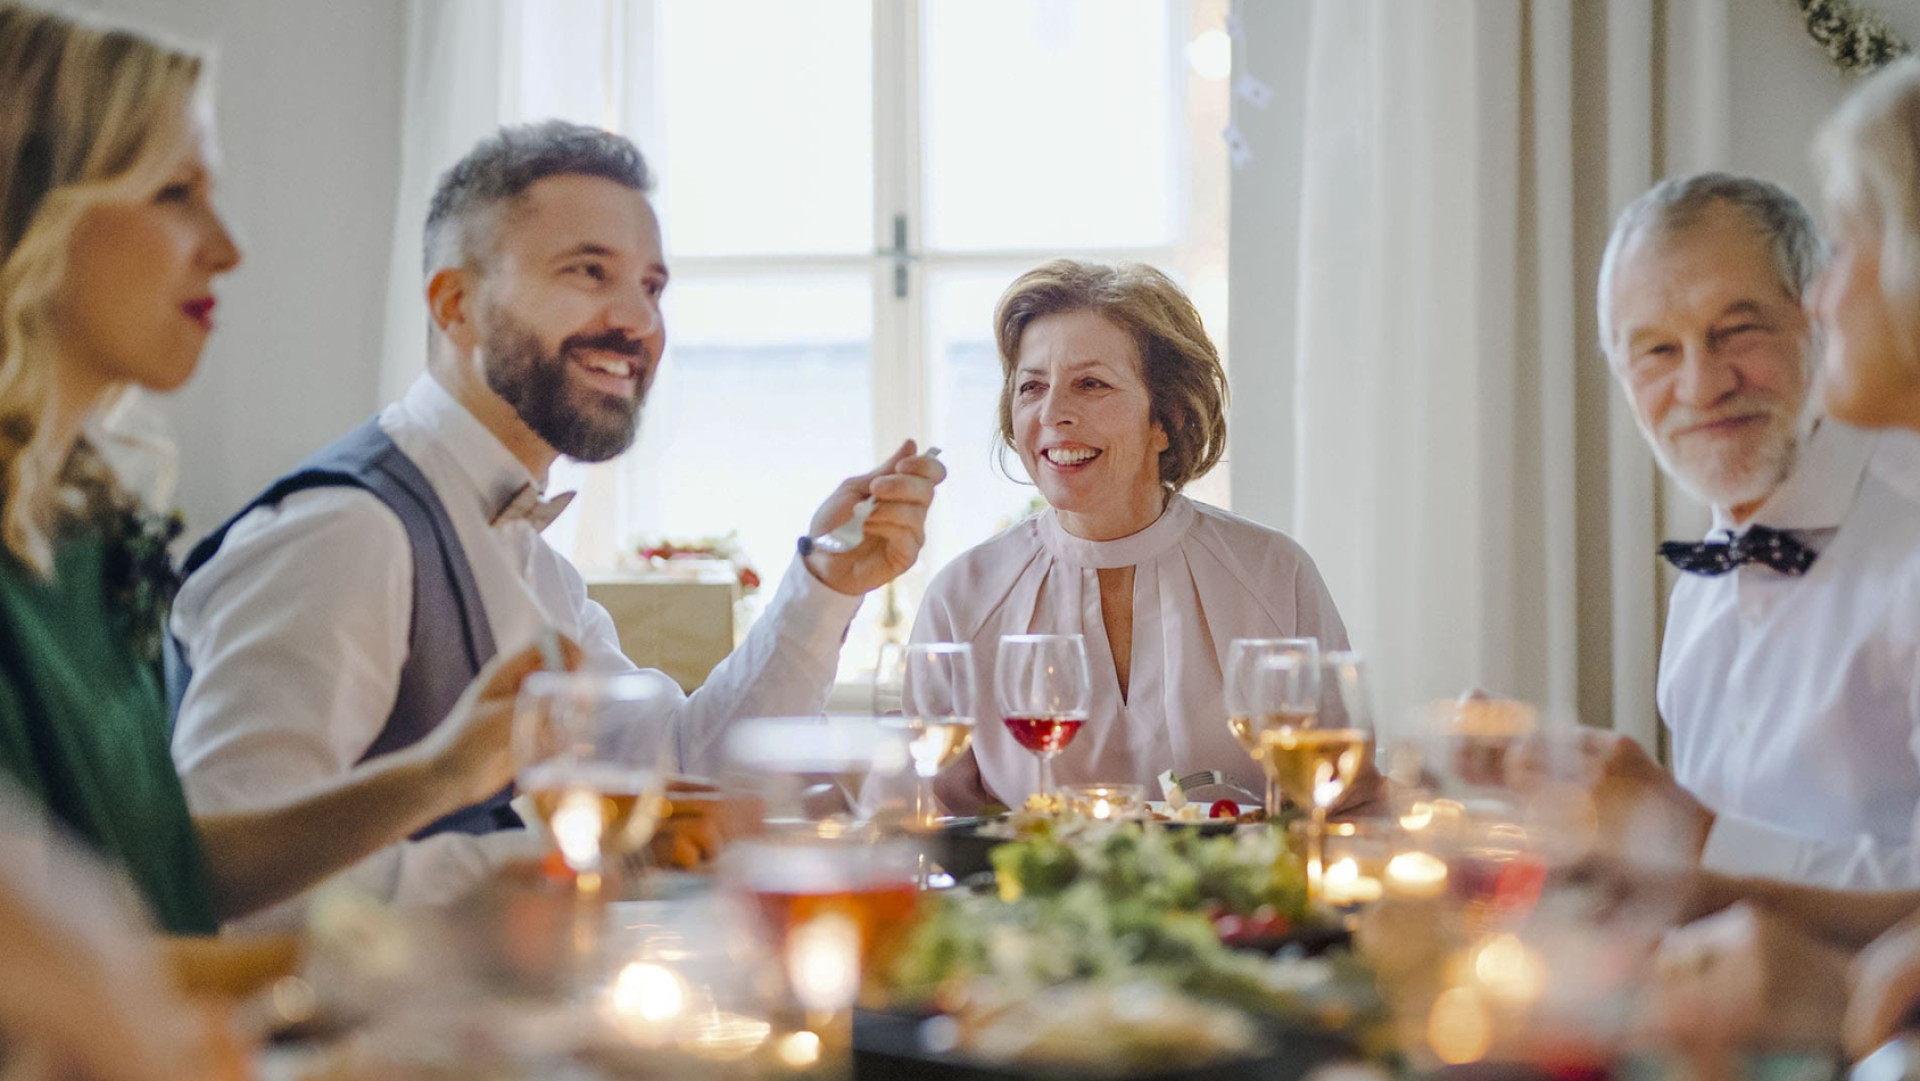 Instant de partage autour d'un repas de famille, d'une table bien dressée et d'un bon verre de vin. Des moments qui illustrent parfaitement l'art de vivre à la française.